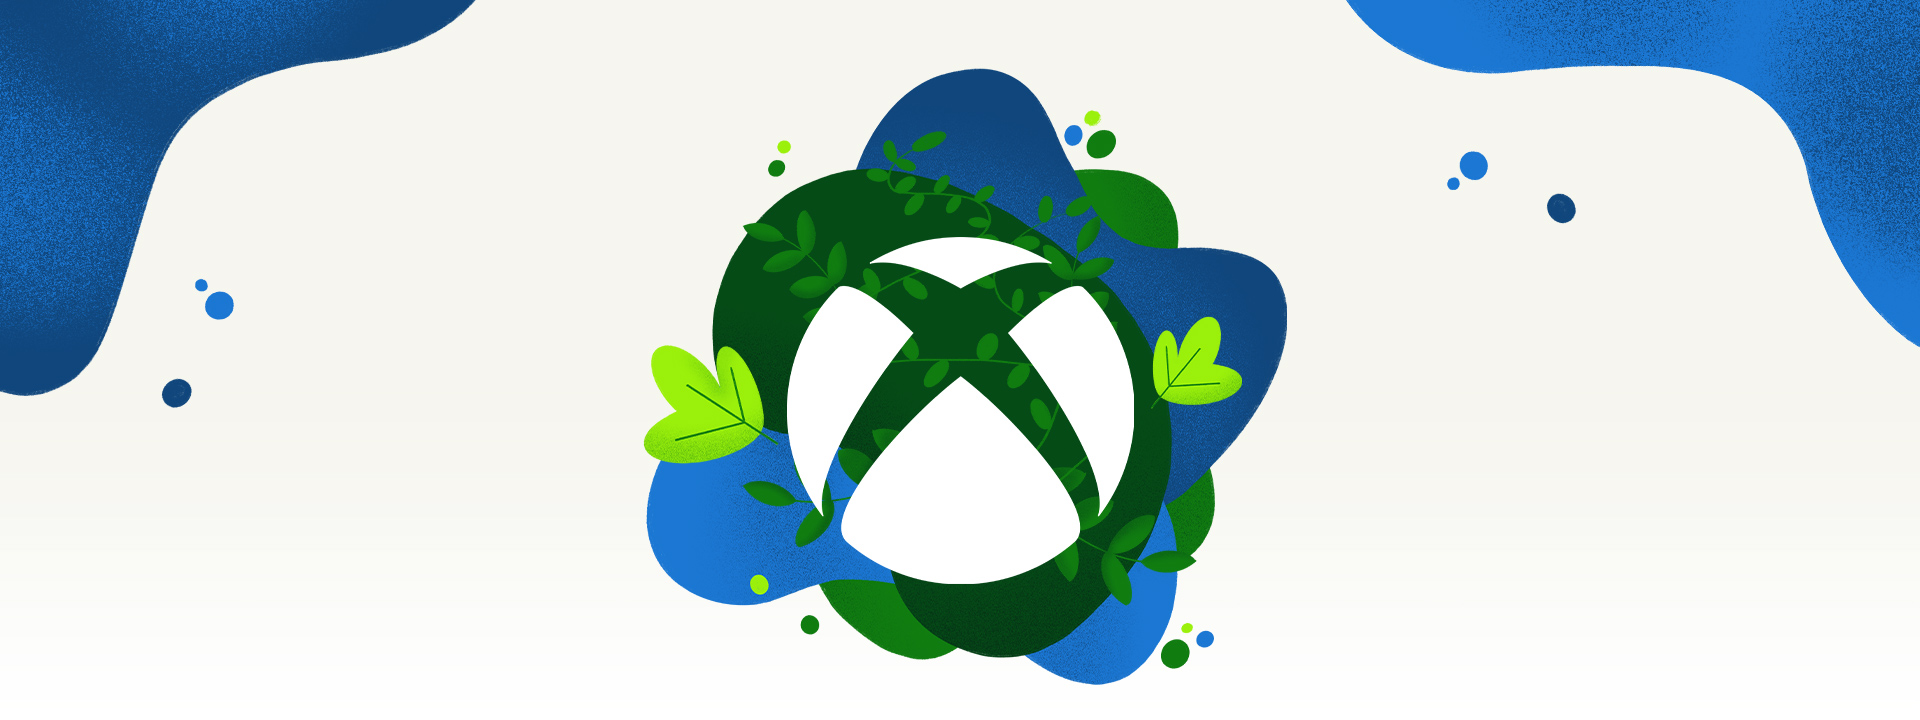 植物と青色の水しぶきで囲まれた Xbox のロゴ。